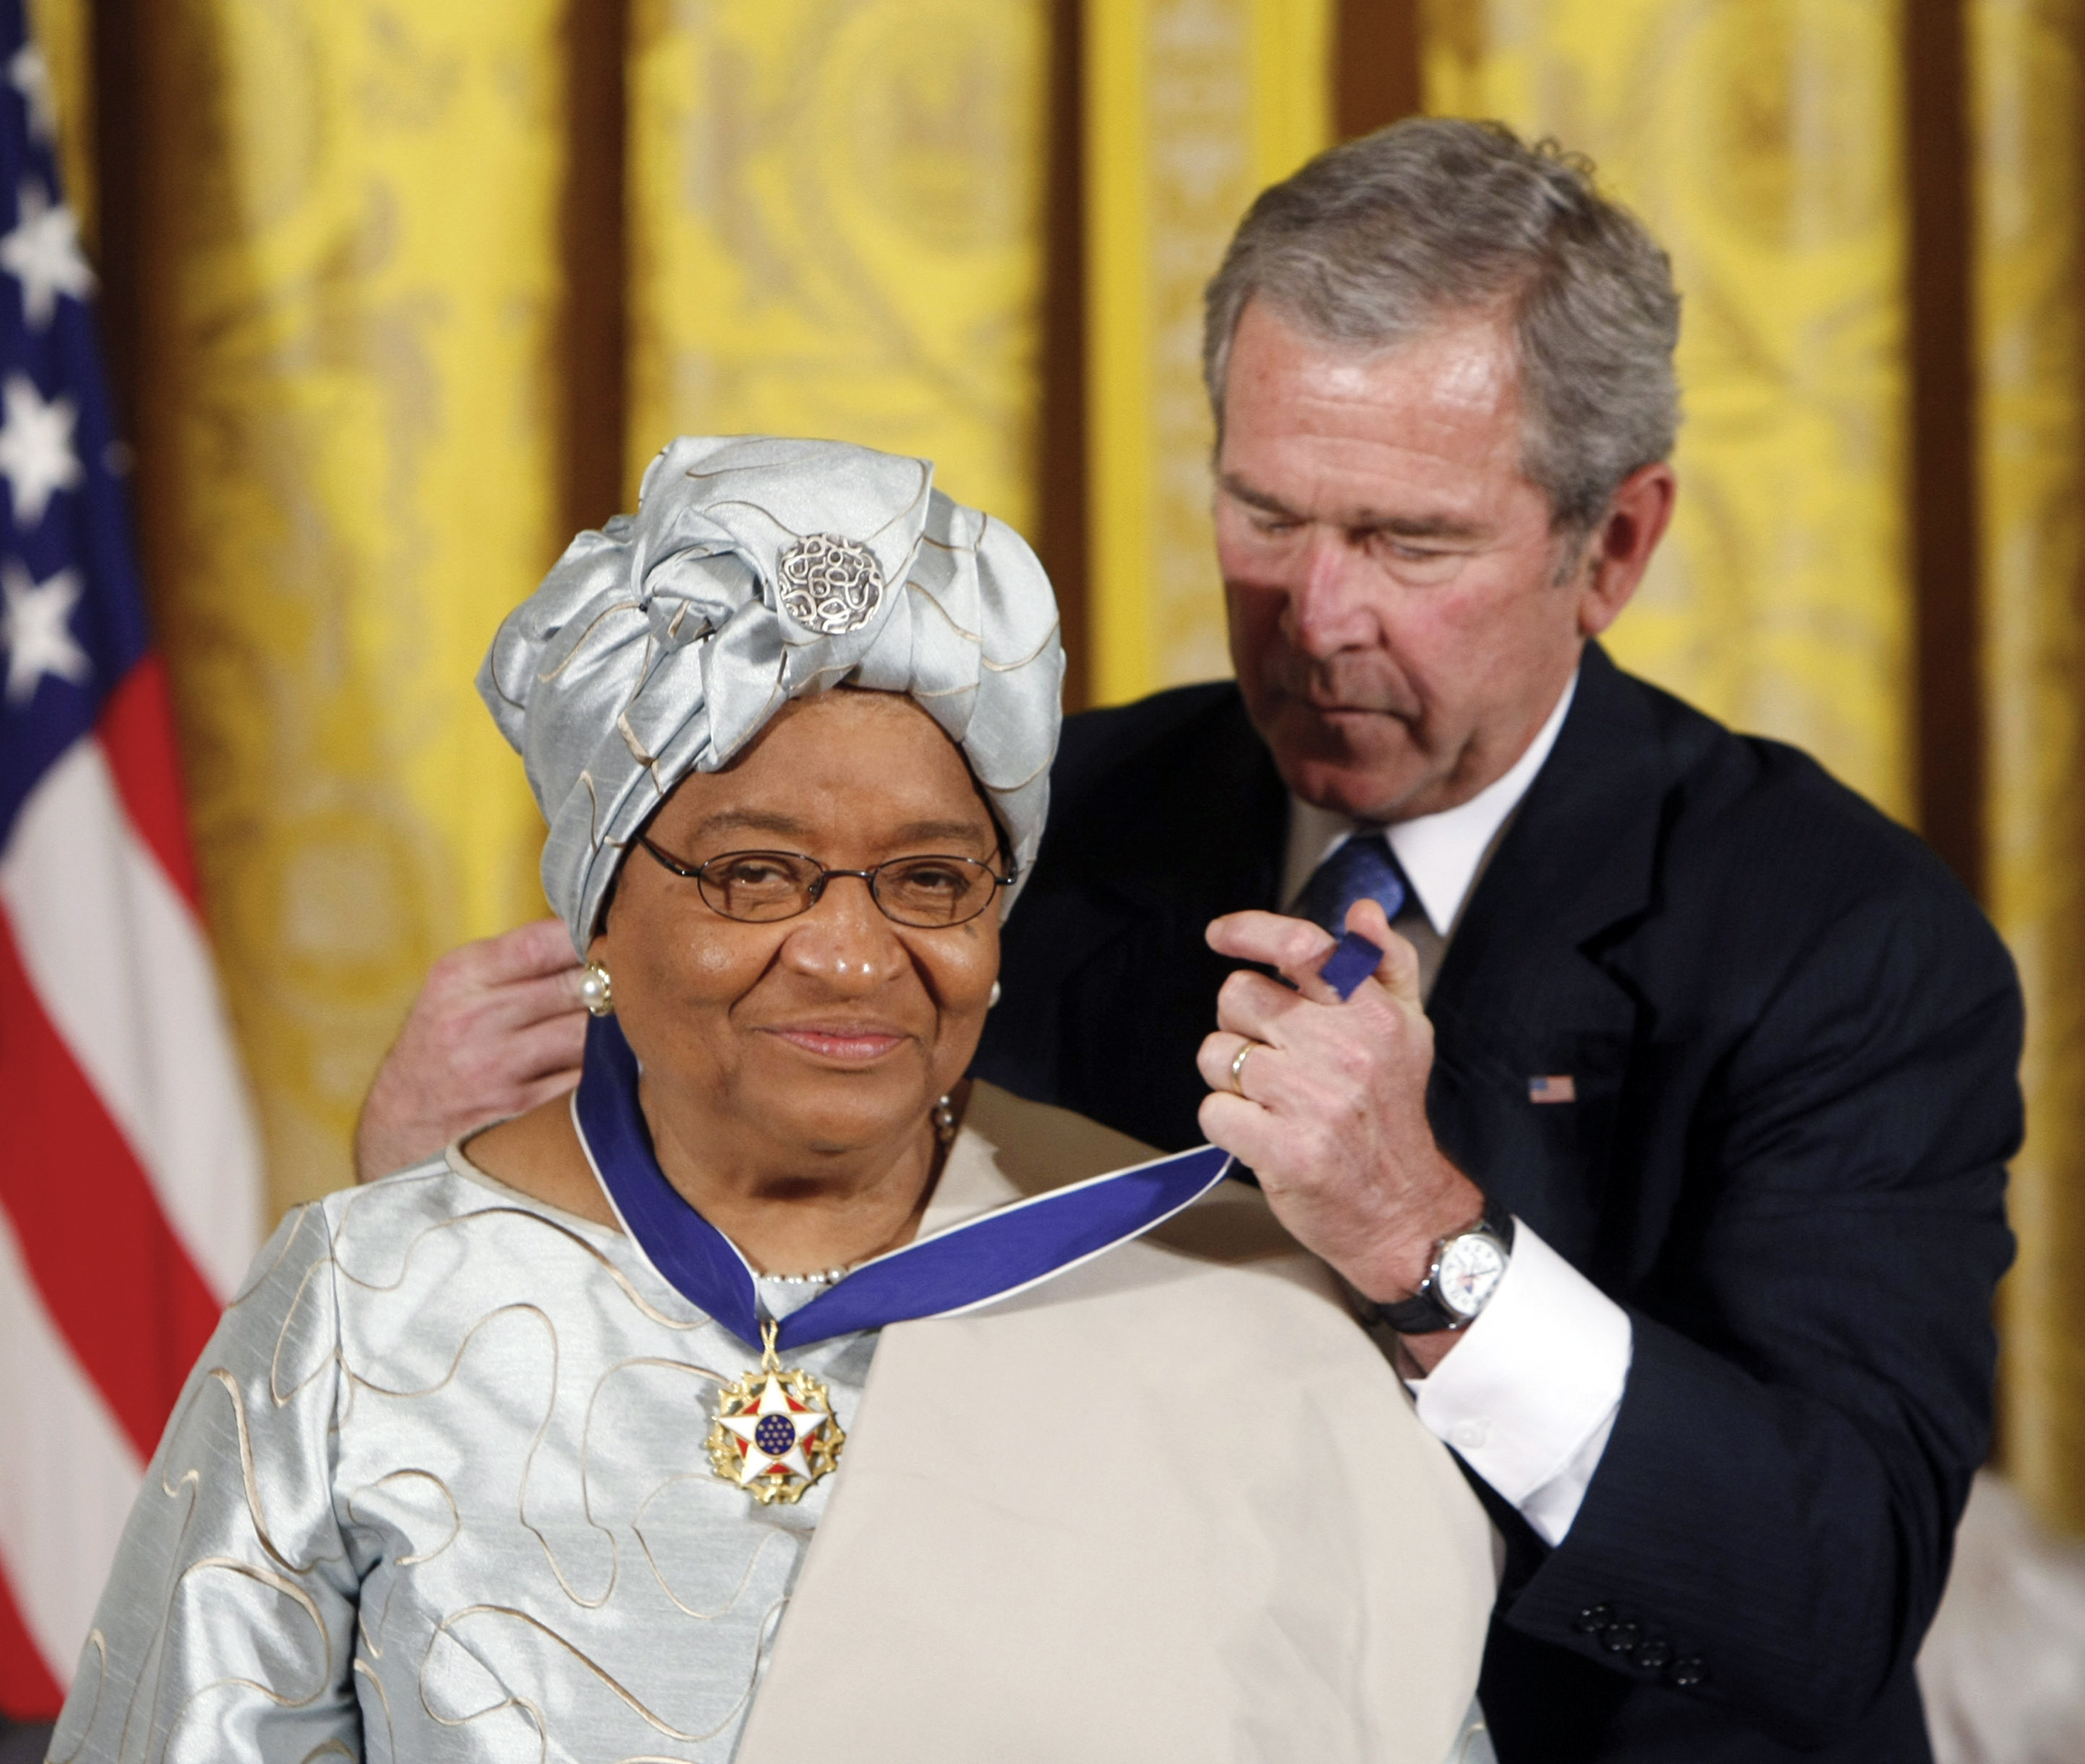 U.S El Presidente George W. Bush entrega la Medalla Presidencial de la Libertad a la Presidenta de Liberia, Ellen Johnson Sirleaf, en una ceremonia en la Casa Blanca en 2005. (AP Images/Gerald Herbert)